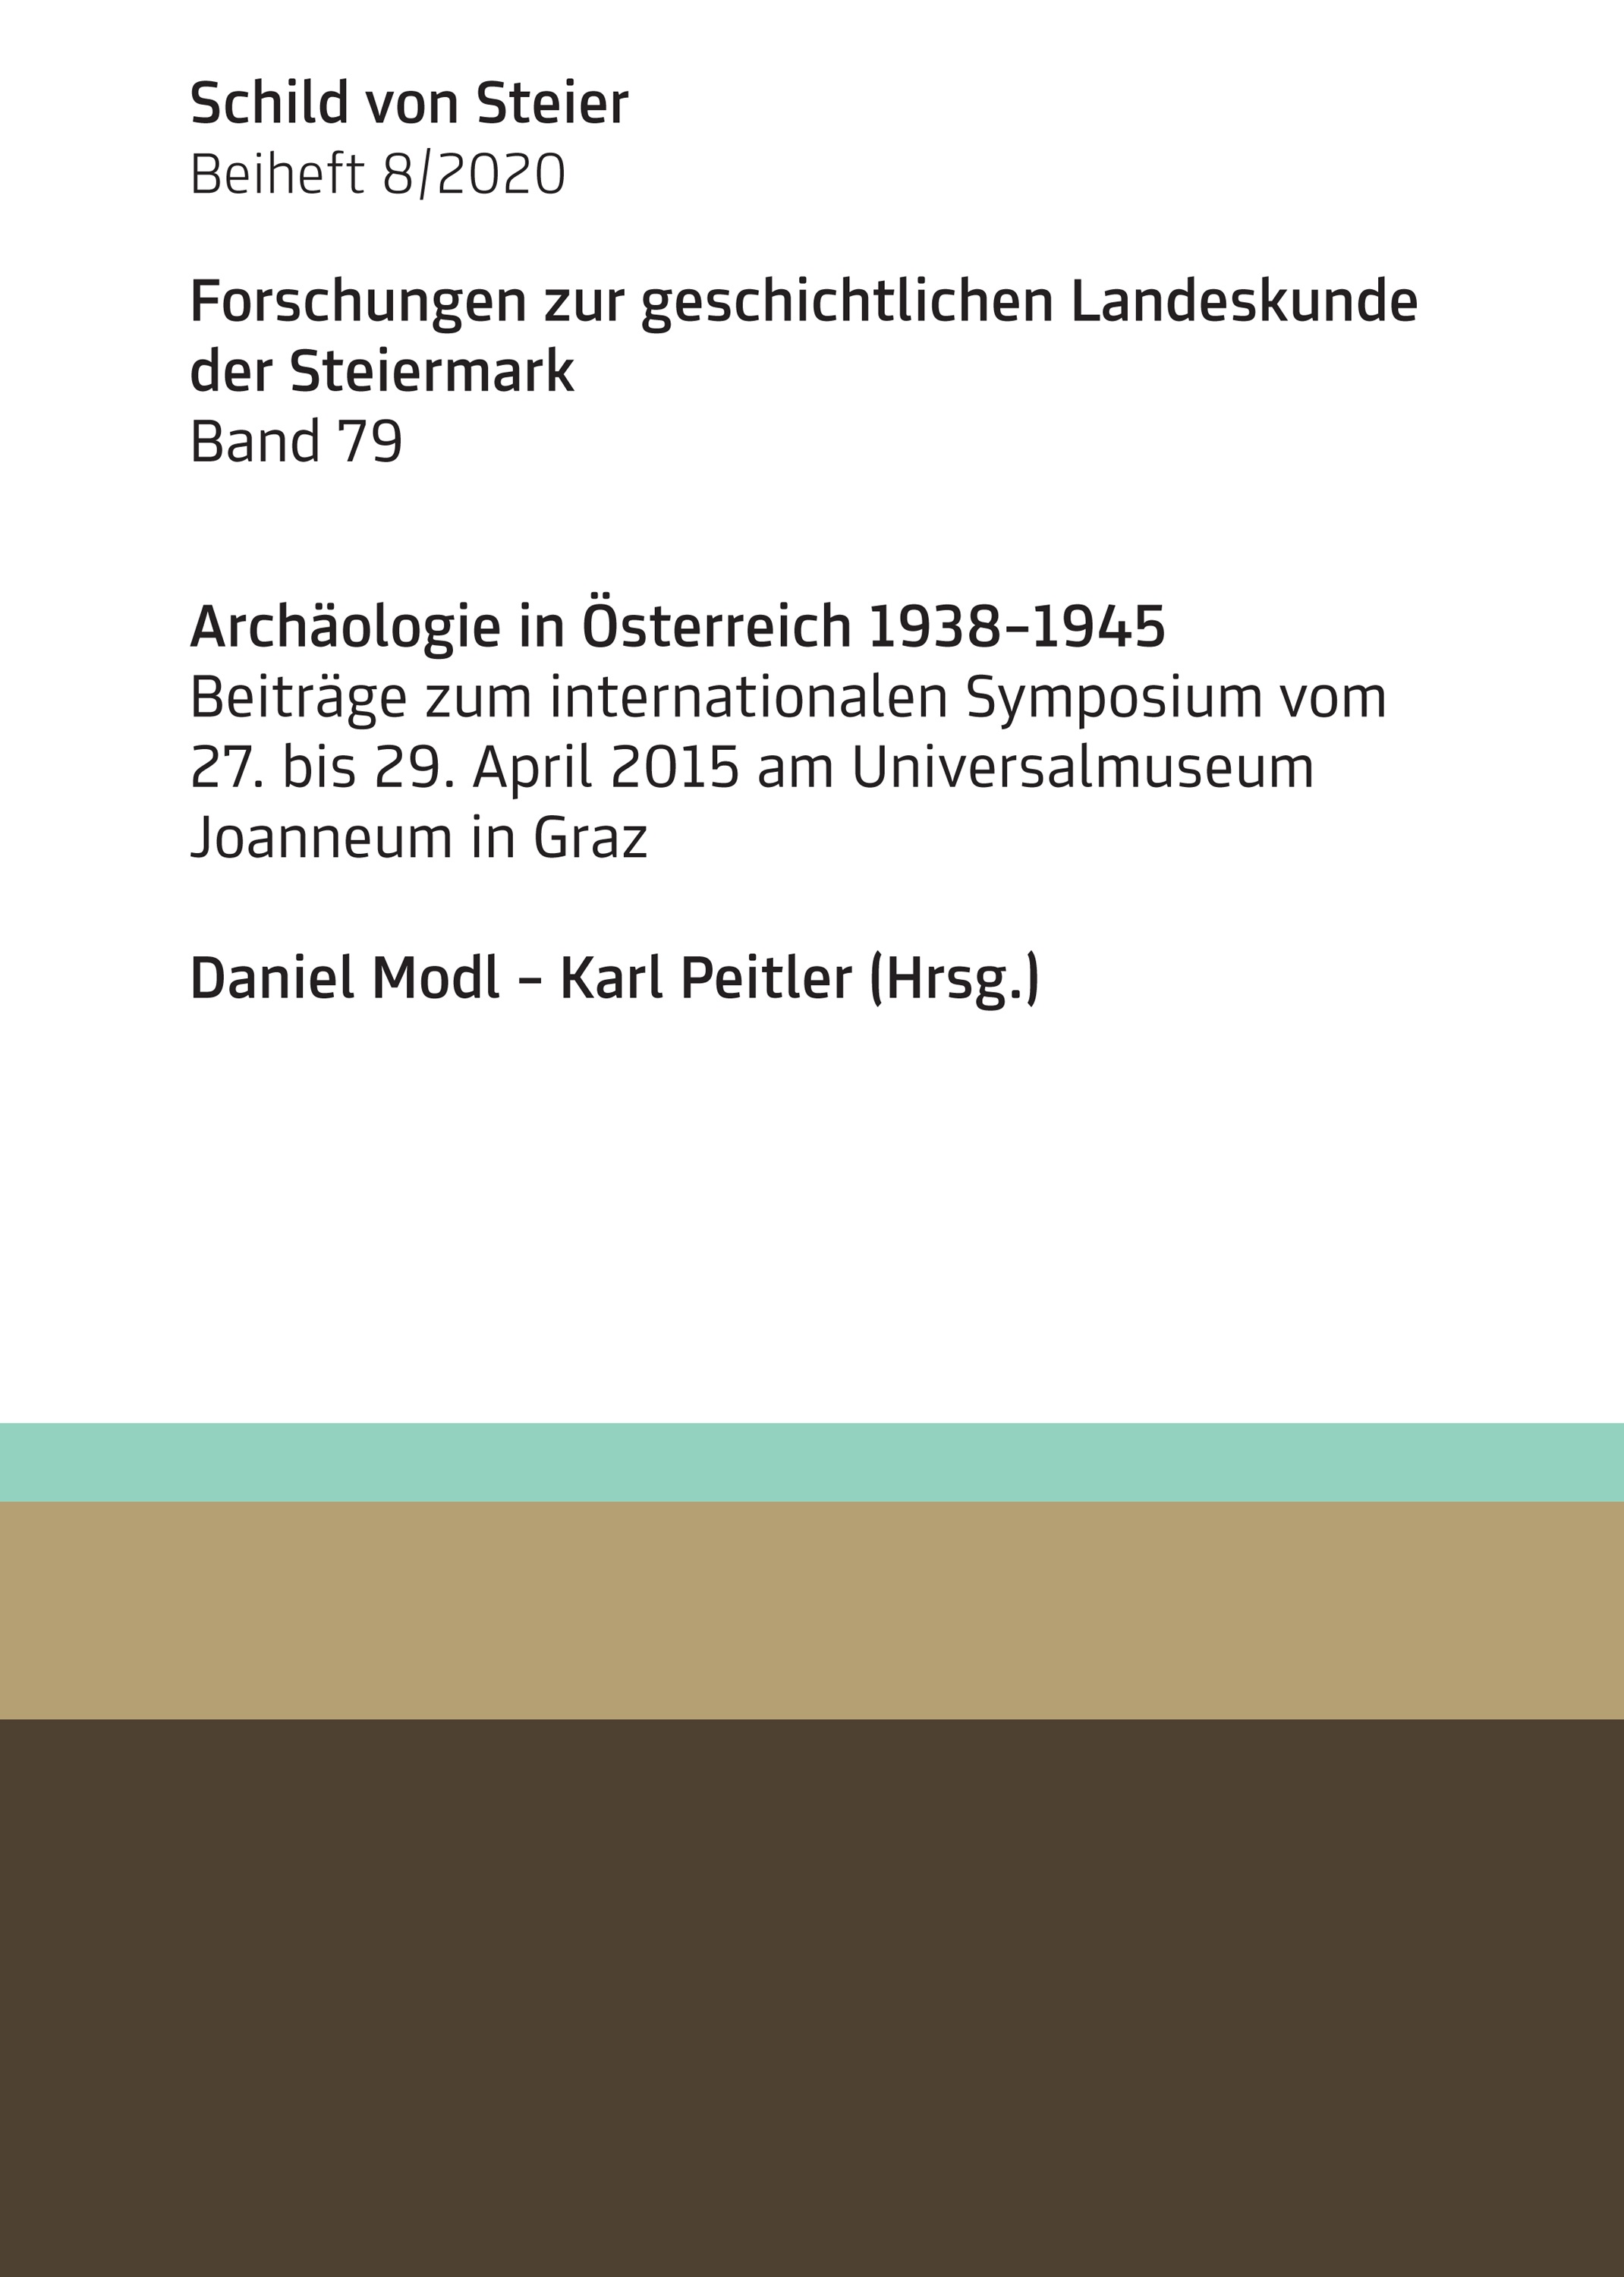 Modl, Daniel - Karl Peitler; Archäologie in Österreich 1938-1945